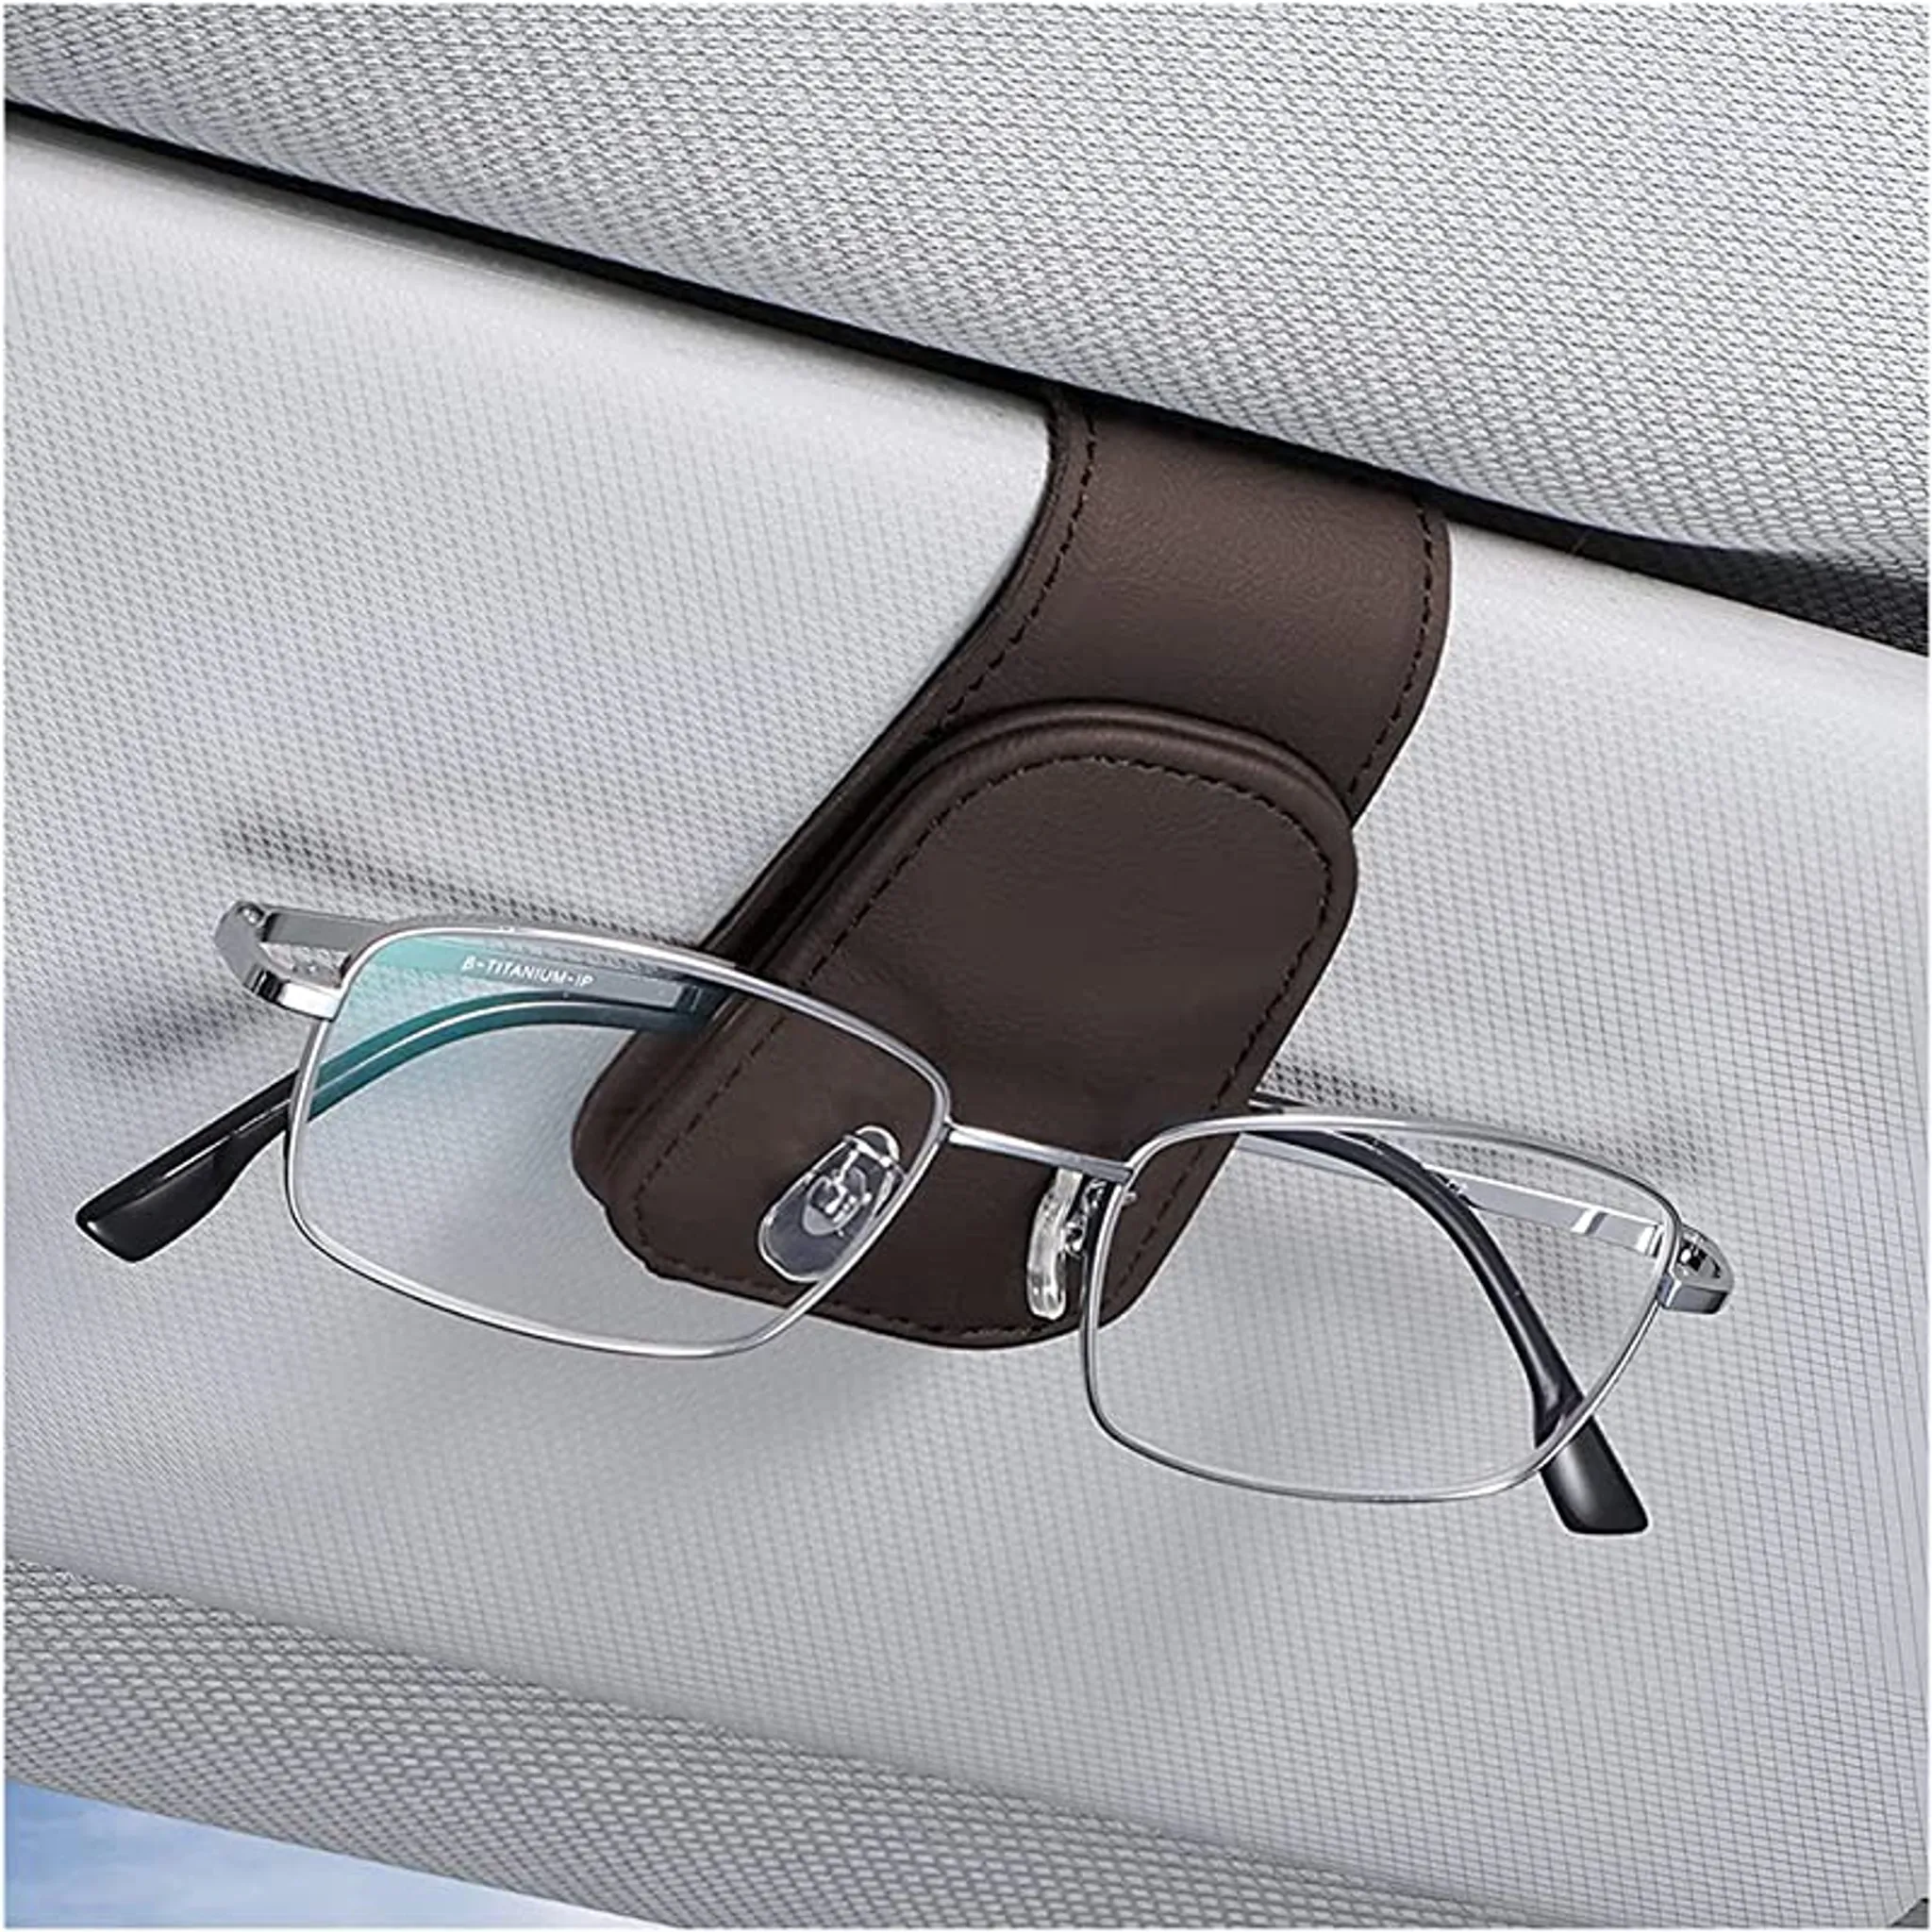 Auto-Brillengestell, 165 mm x 55 mm x 35 mm Brillenetui  Auto-Sonnenbrillen-Aufbewahrungshalter für Brillen im Auto-Brillenetui  Aufbewahrungsbox